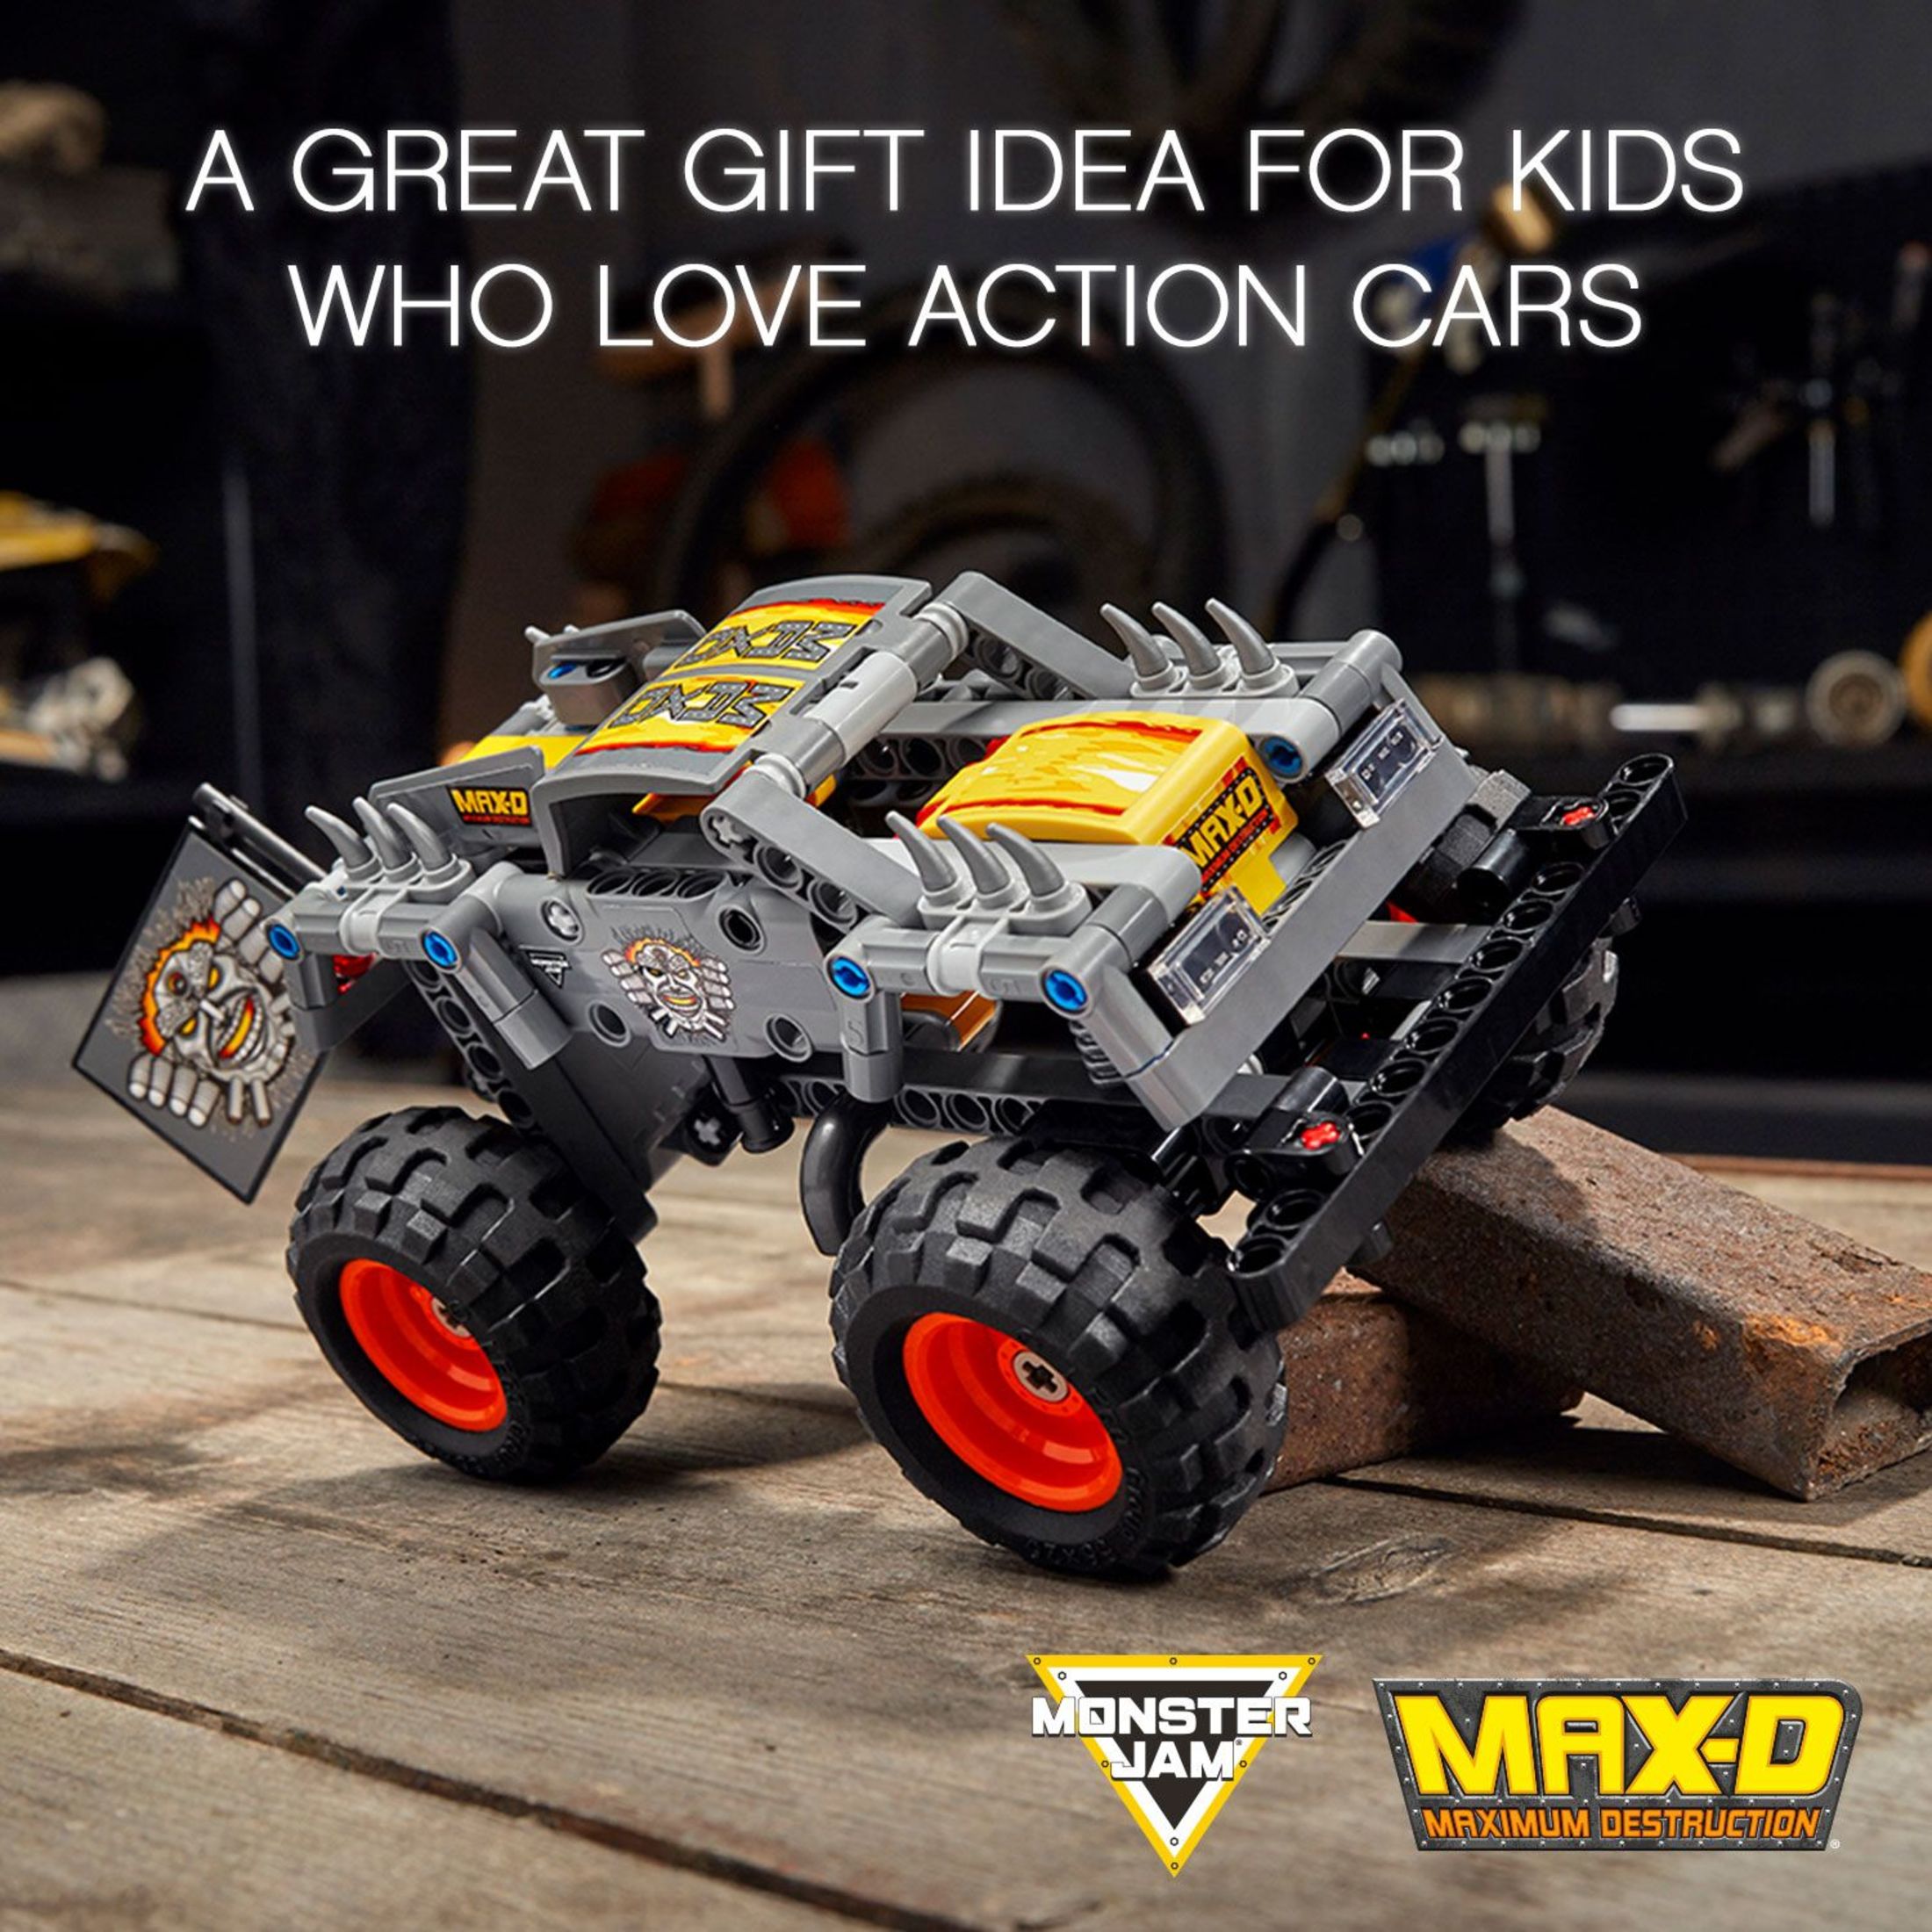 LEGO Technic Monster Jam Max-D 42119 Model Kit for Kids Who Love Monster Trucks (230 Pieces) - image 4 of 8